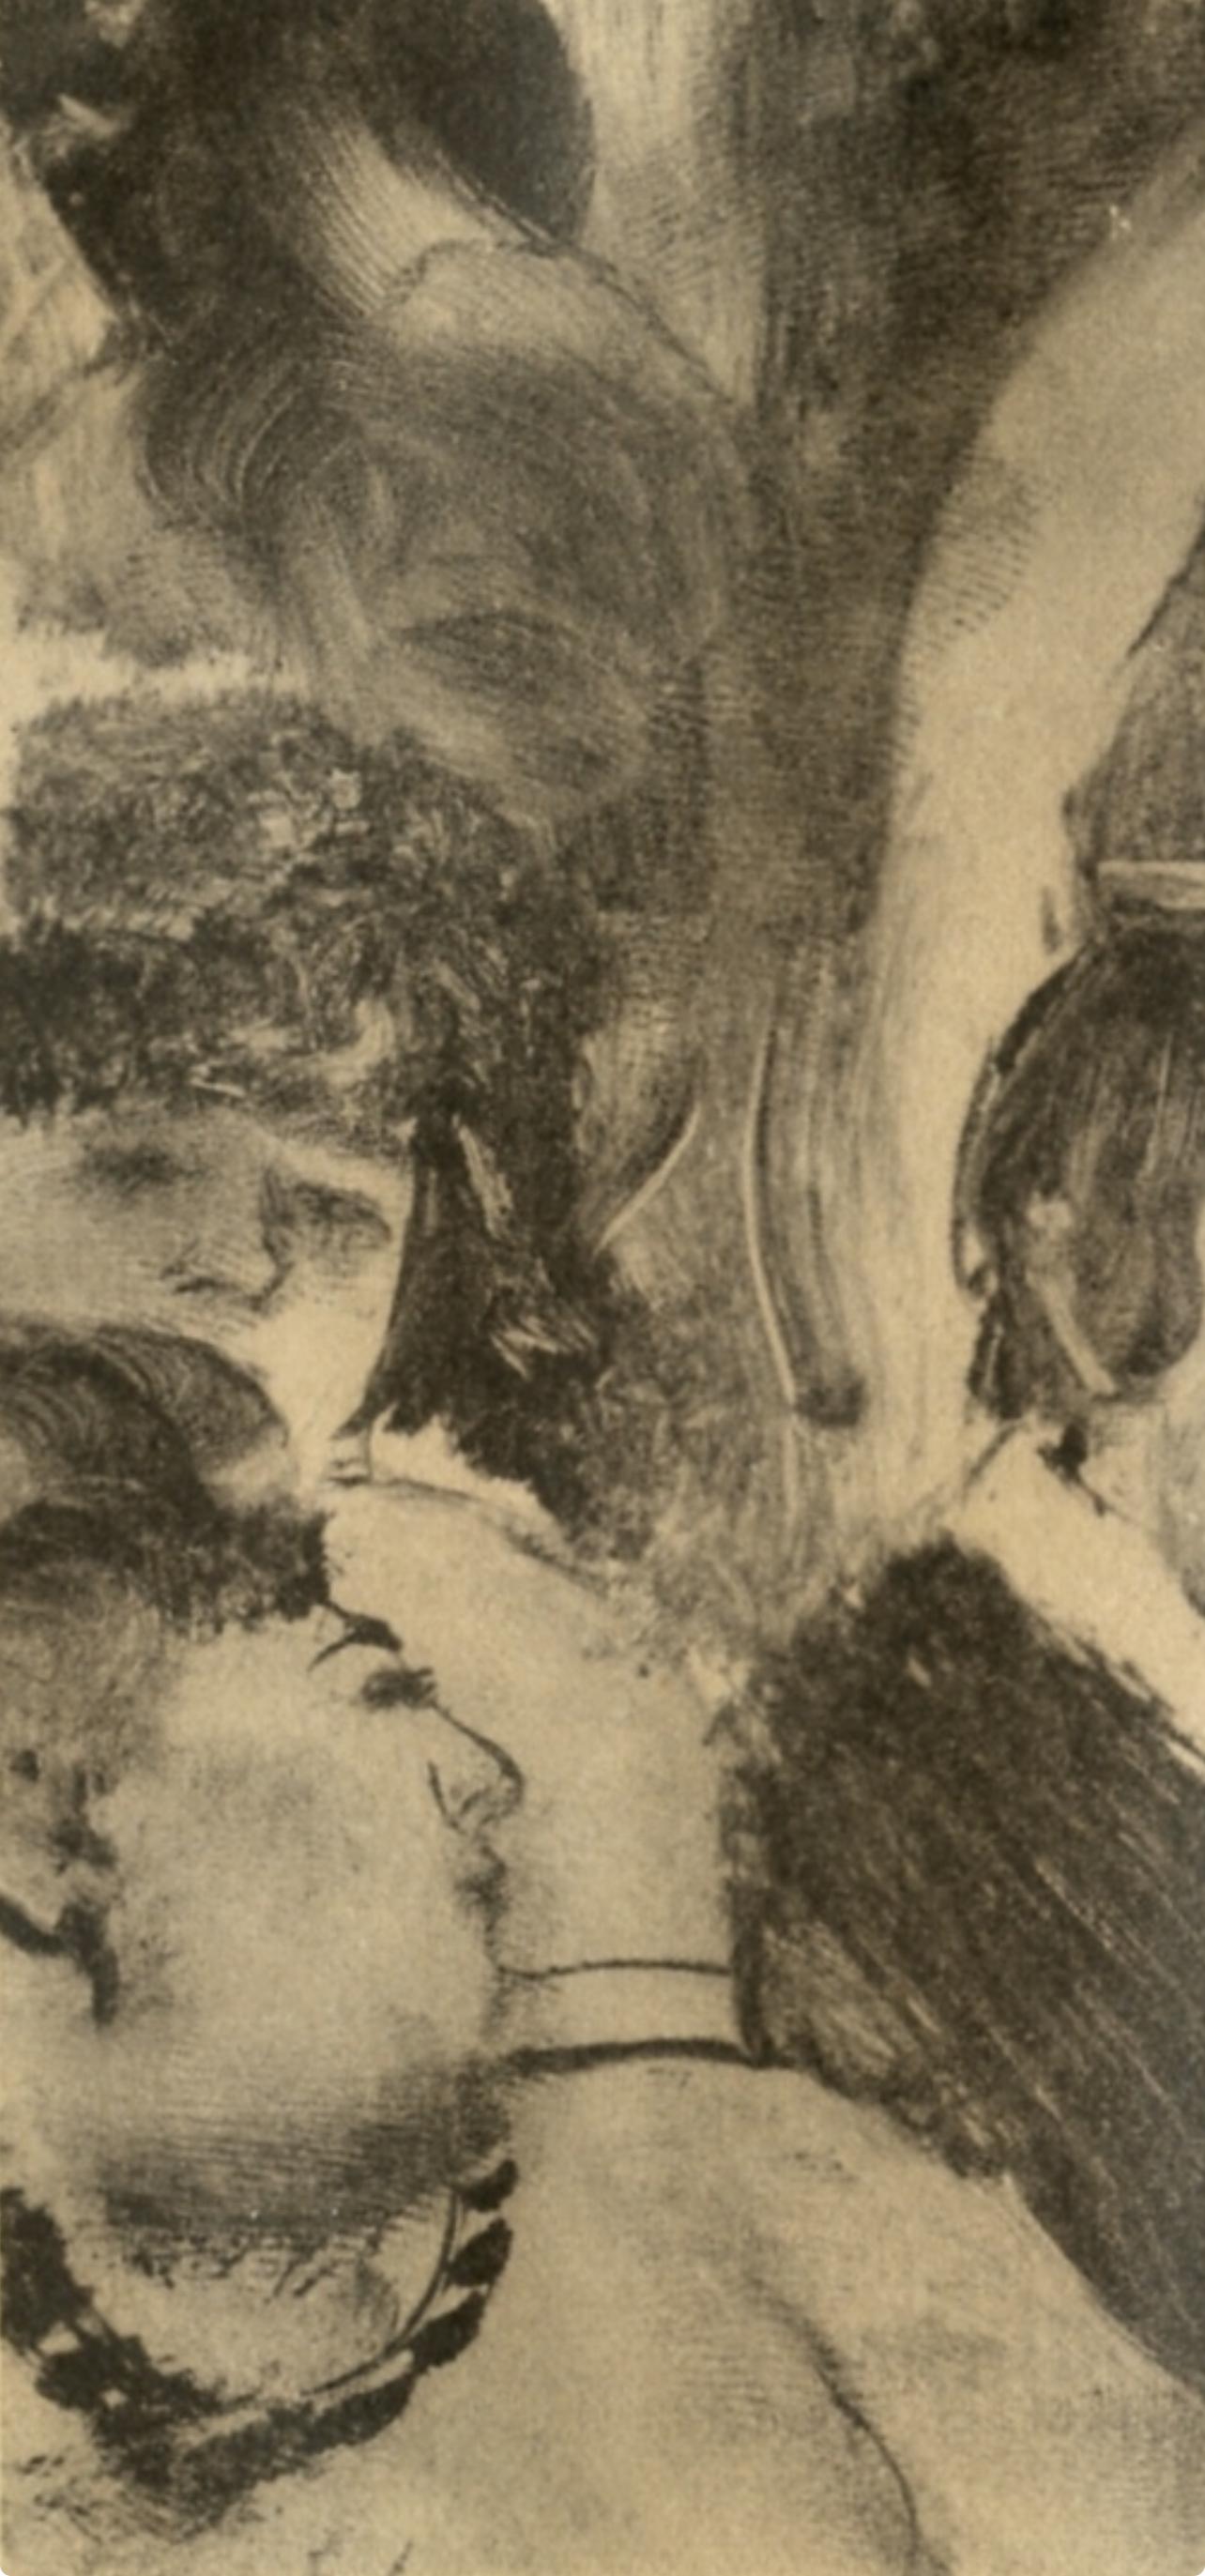 Degas, Petite Fete de la Patronne, Les Monotypes (after) - Impressionist Print by Edgar Degas